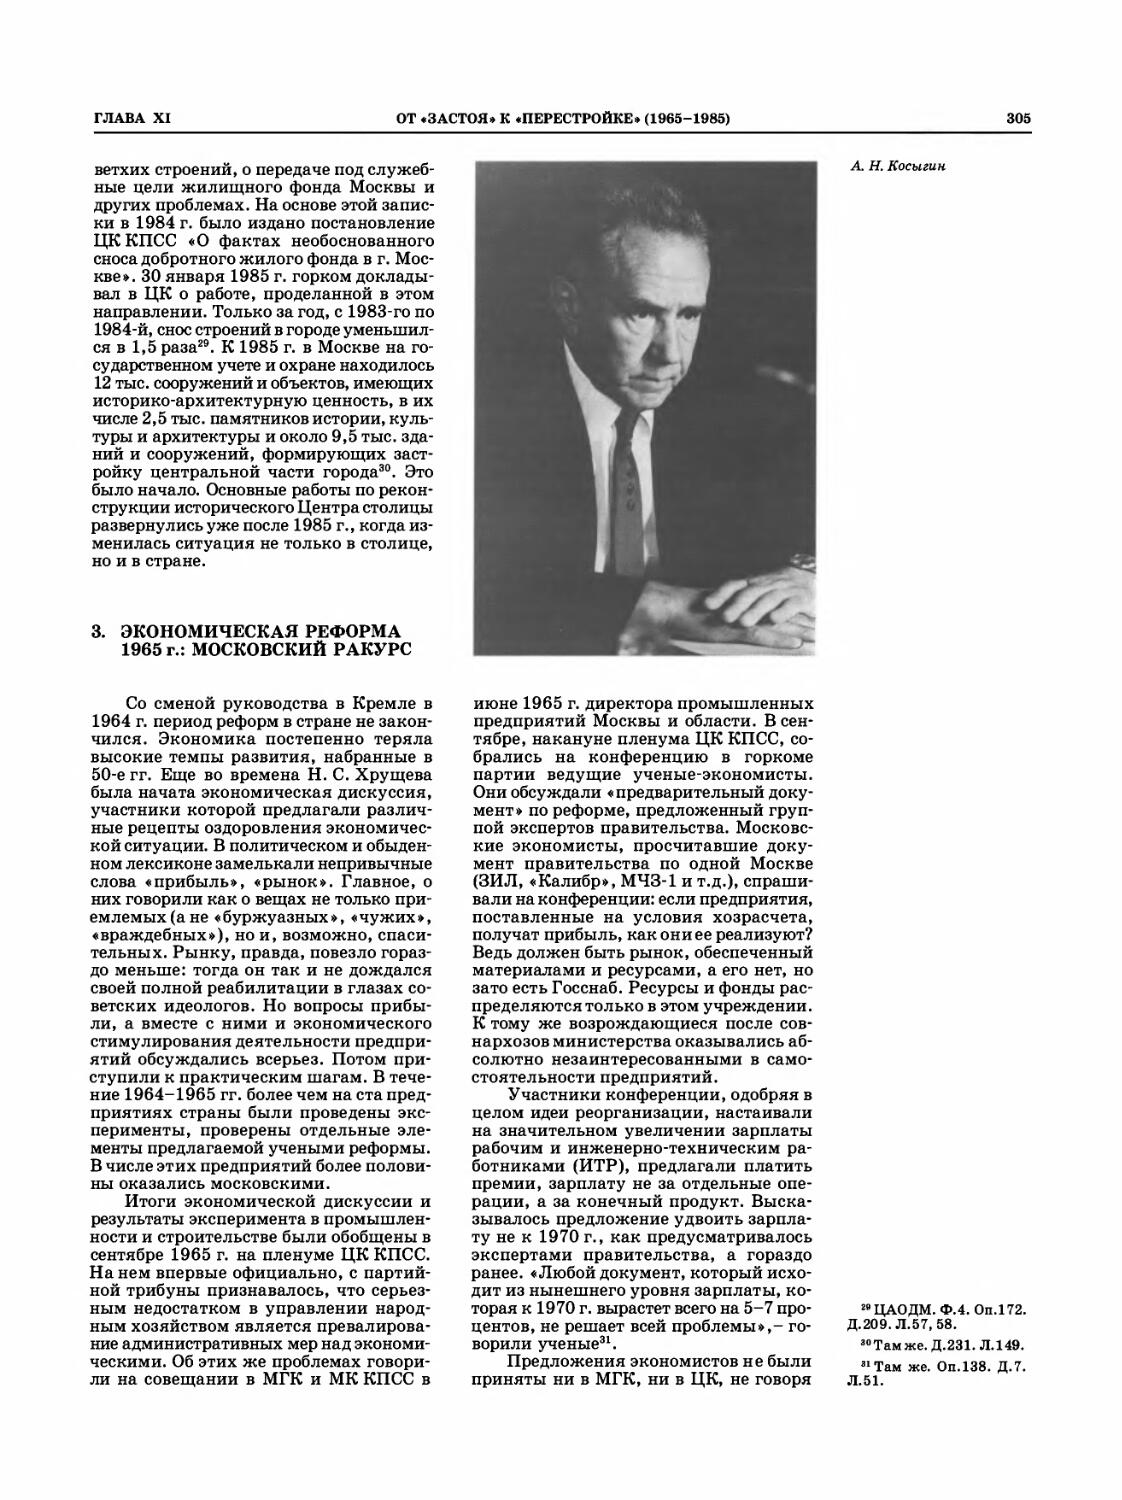 Экономическая реформа 1965 г.: московский ракурс